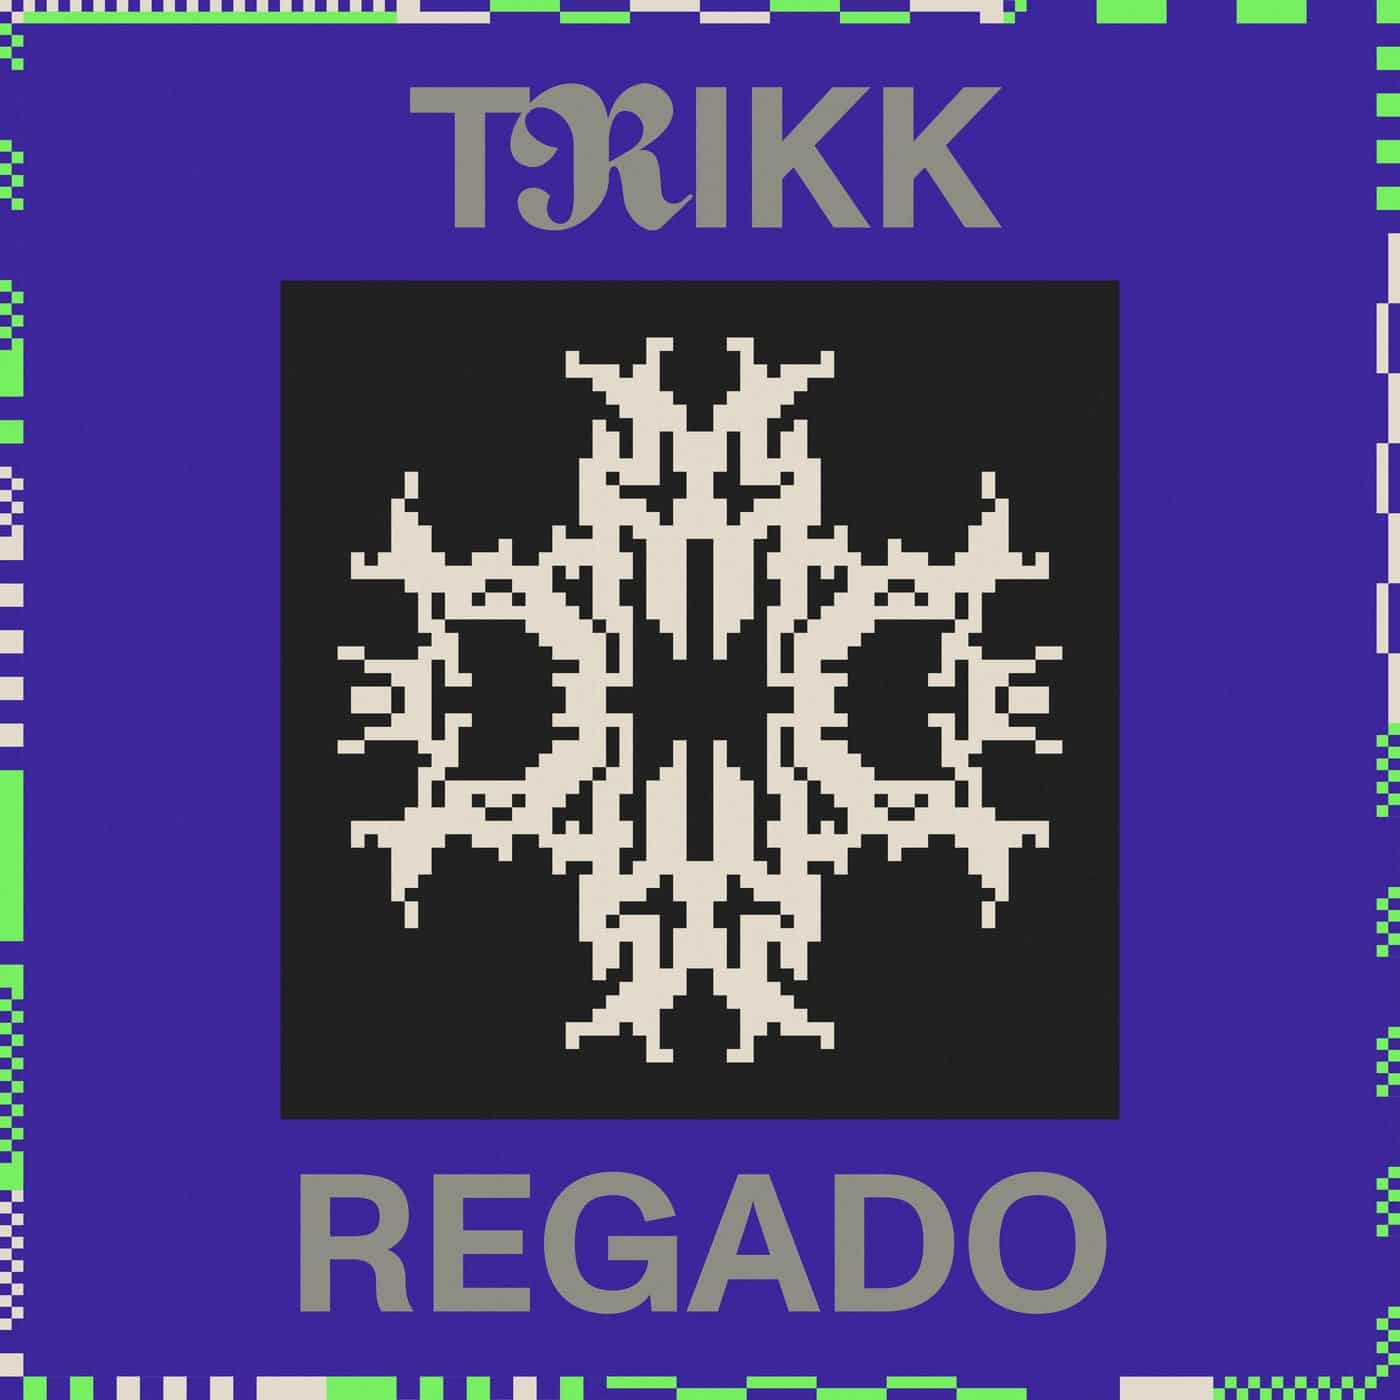 Download Trikk - Regado on Electrobuzz